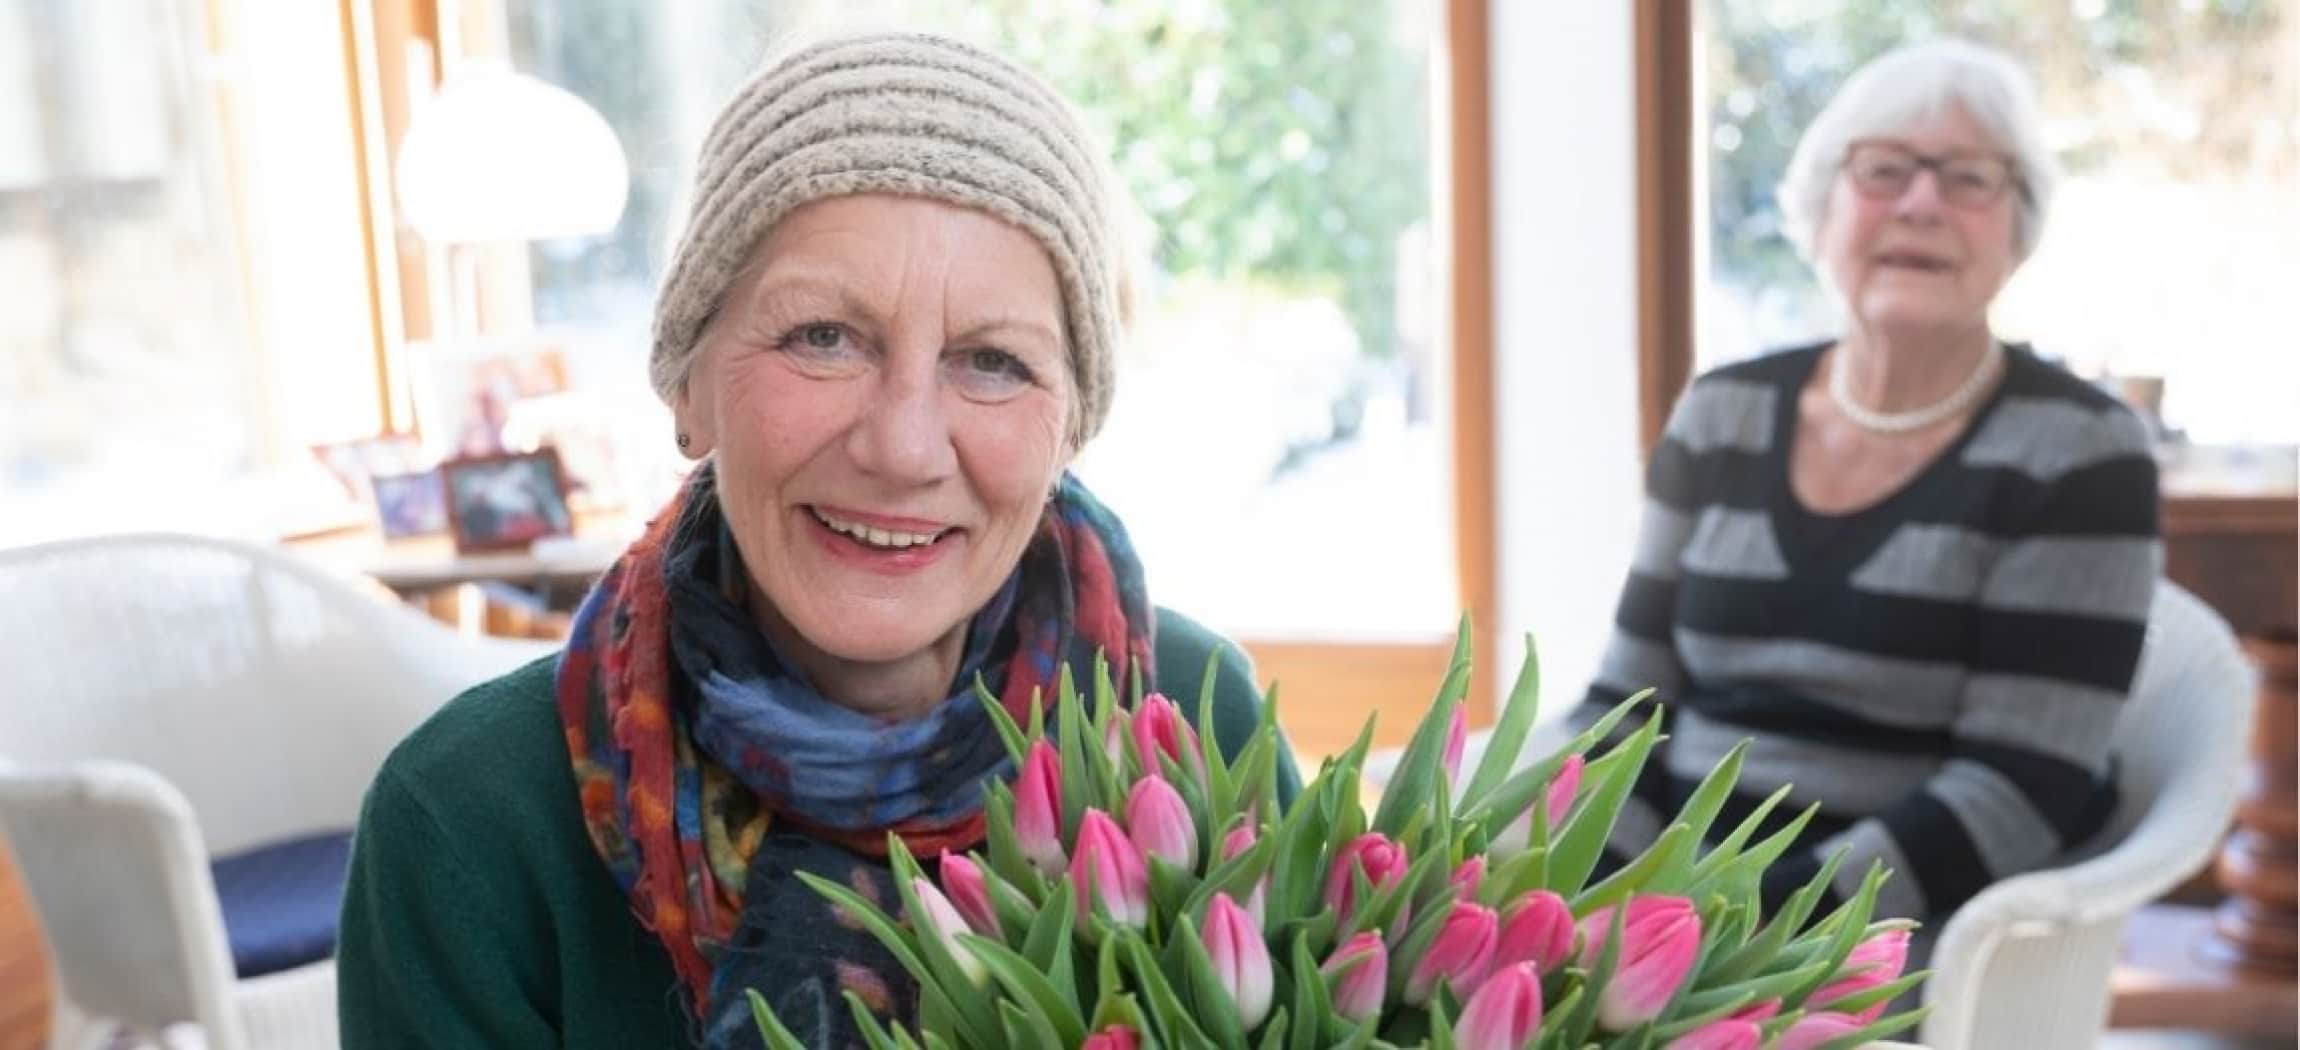 Manja Bunschoten van Amstelring Wijkzorg met een bos tulpen in haar handen